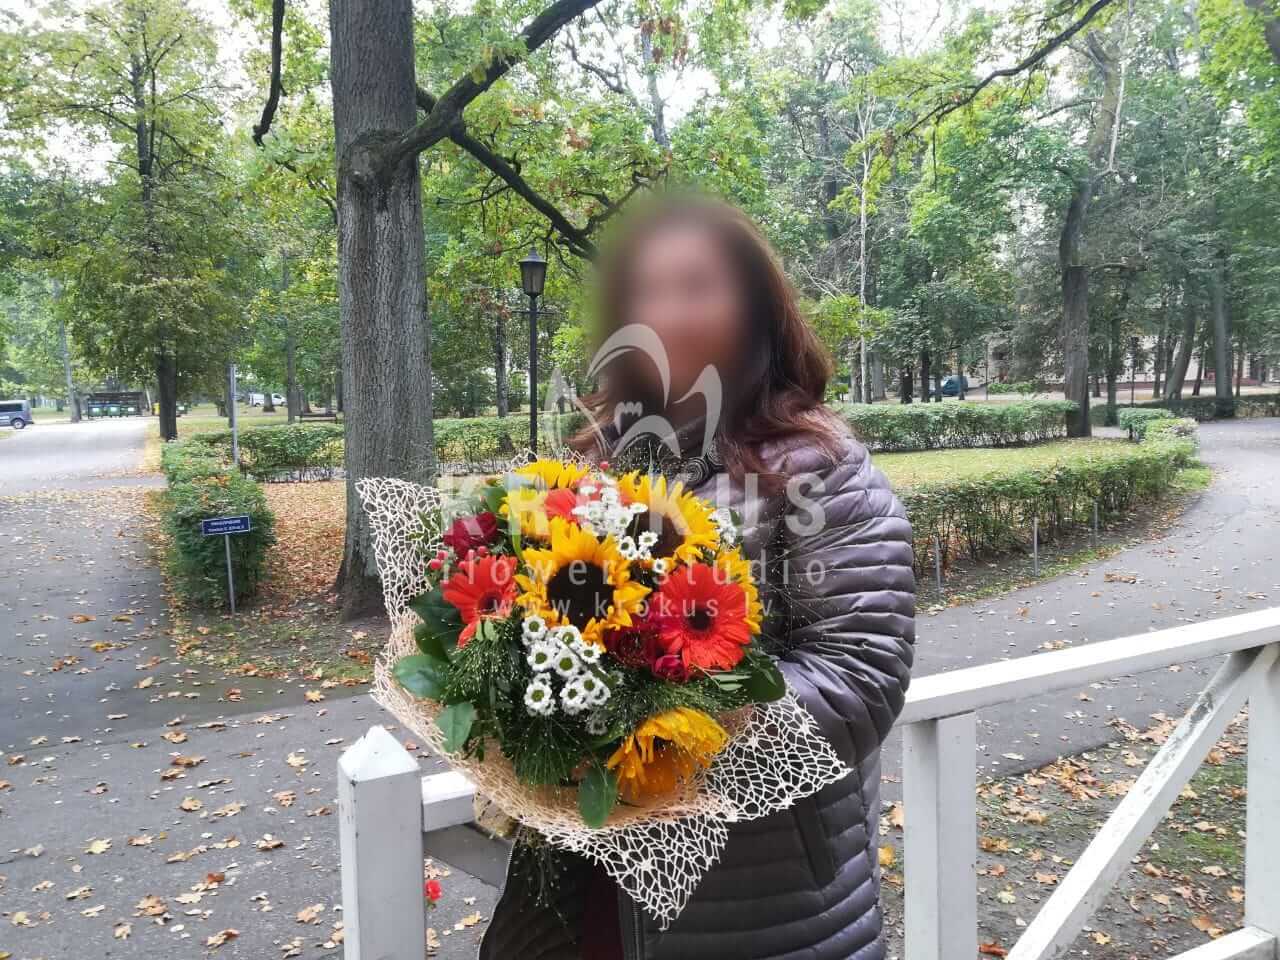 Доставка цветов в город Рига (кустовые розыподсолнухилуговые цветысолидагогиперикумхризантемыгерберы)